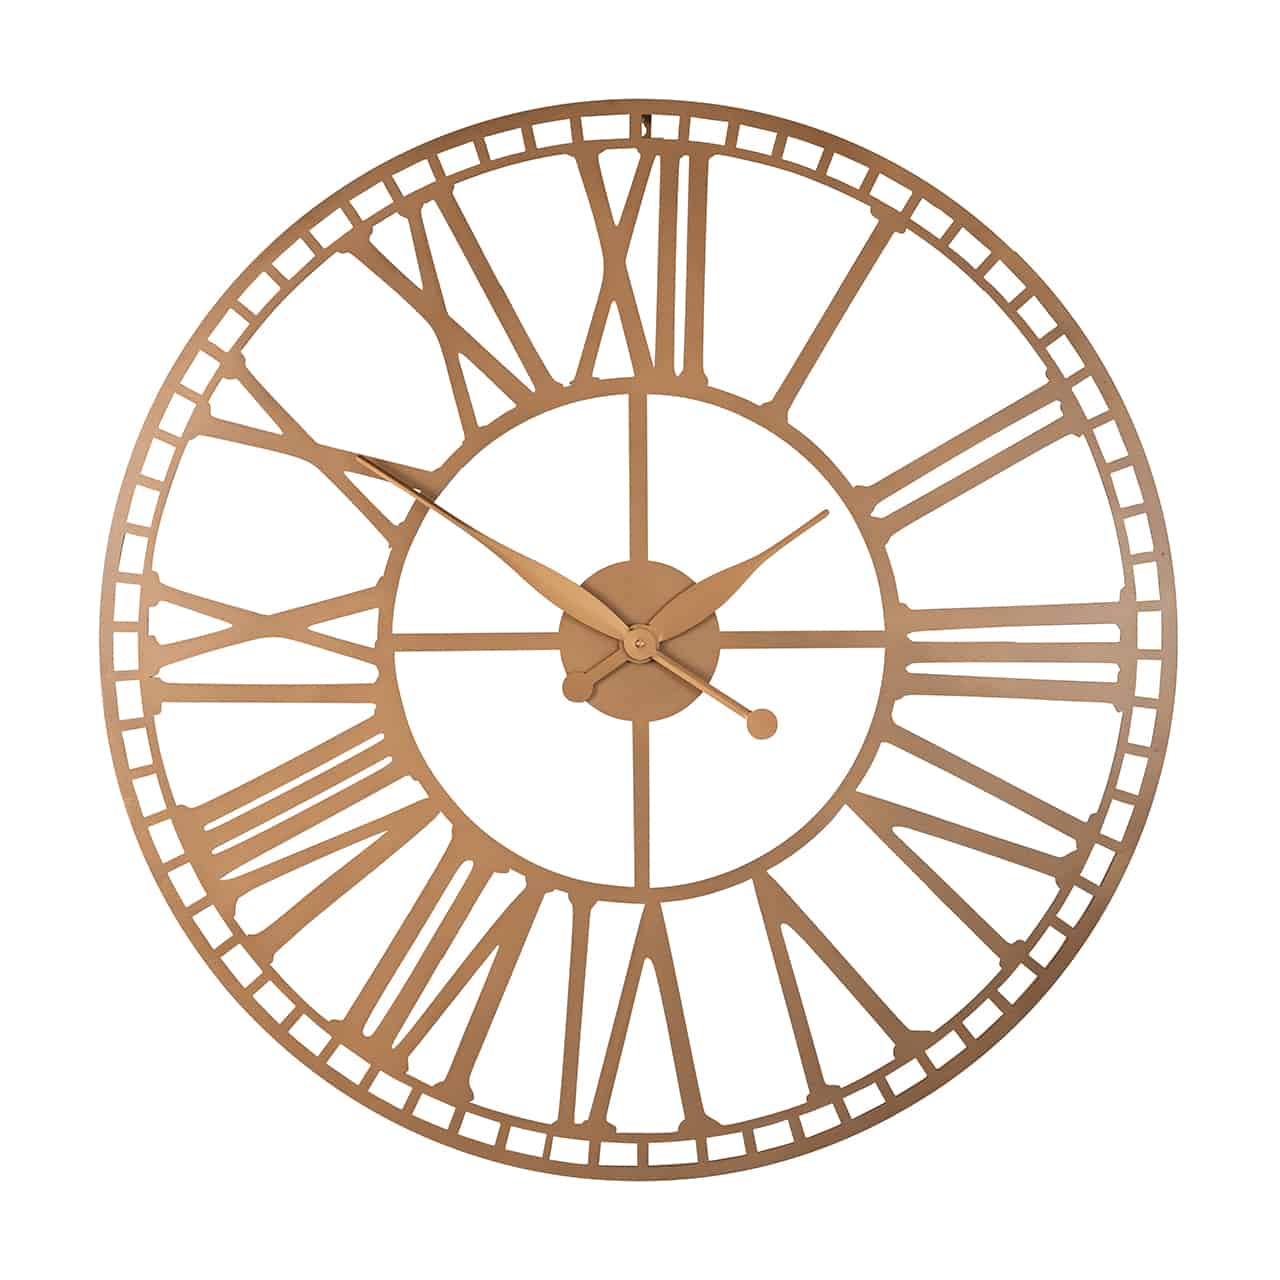 Runde Wanduhr; zwischen zwei goldenen Reifen große römische Ziffern; in der Mitte ein goldenes Kreuz; am Kreuzungspunkt eine keine Scheibe, an der die spitz zulaufenden Uhrzeiger angebracht sind; der äußere Rand stellt in kleinen Segmenten die Minuten dar.